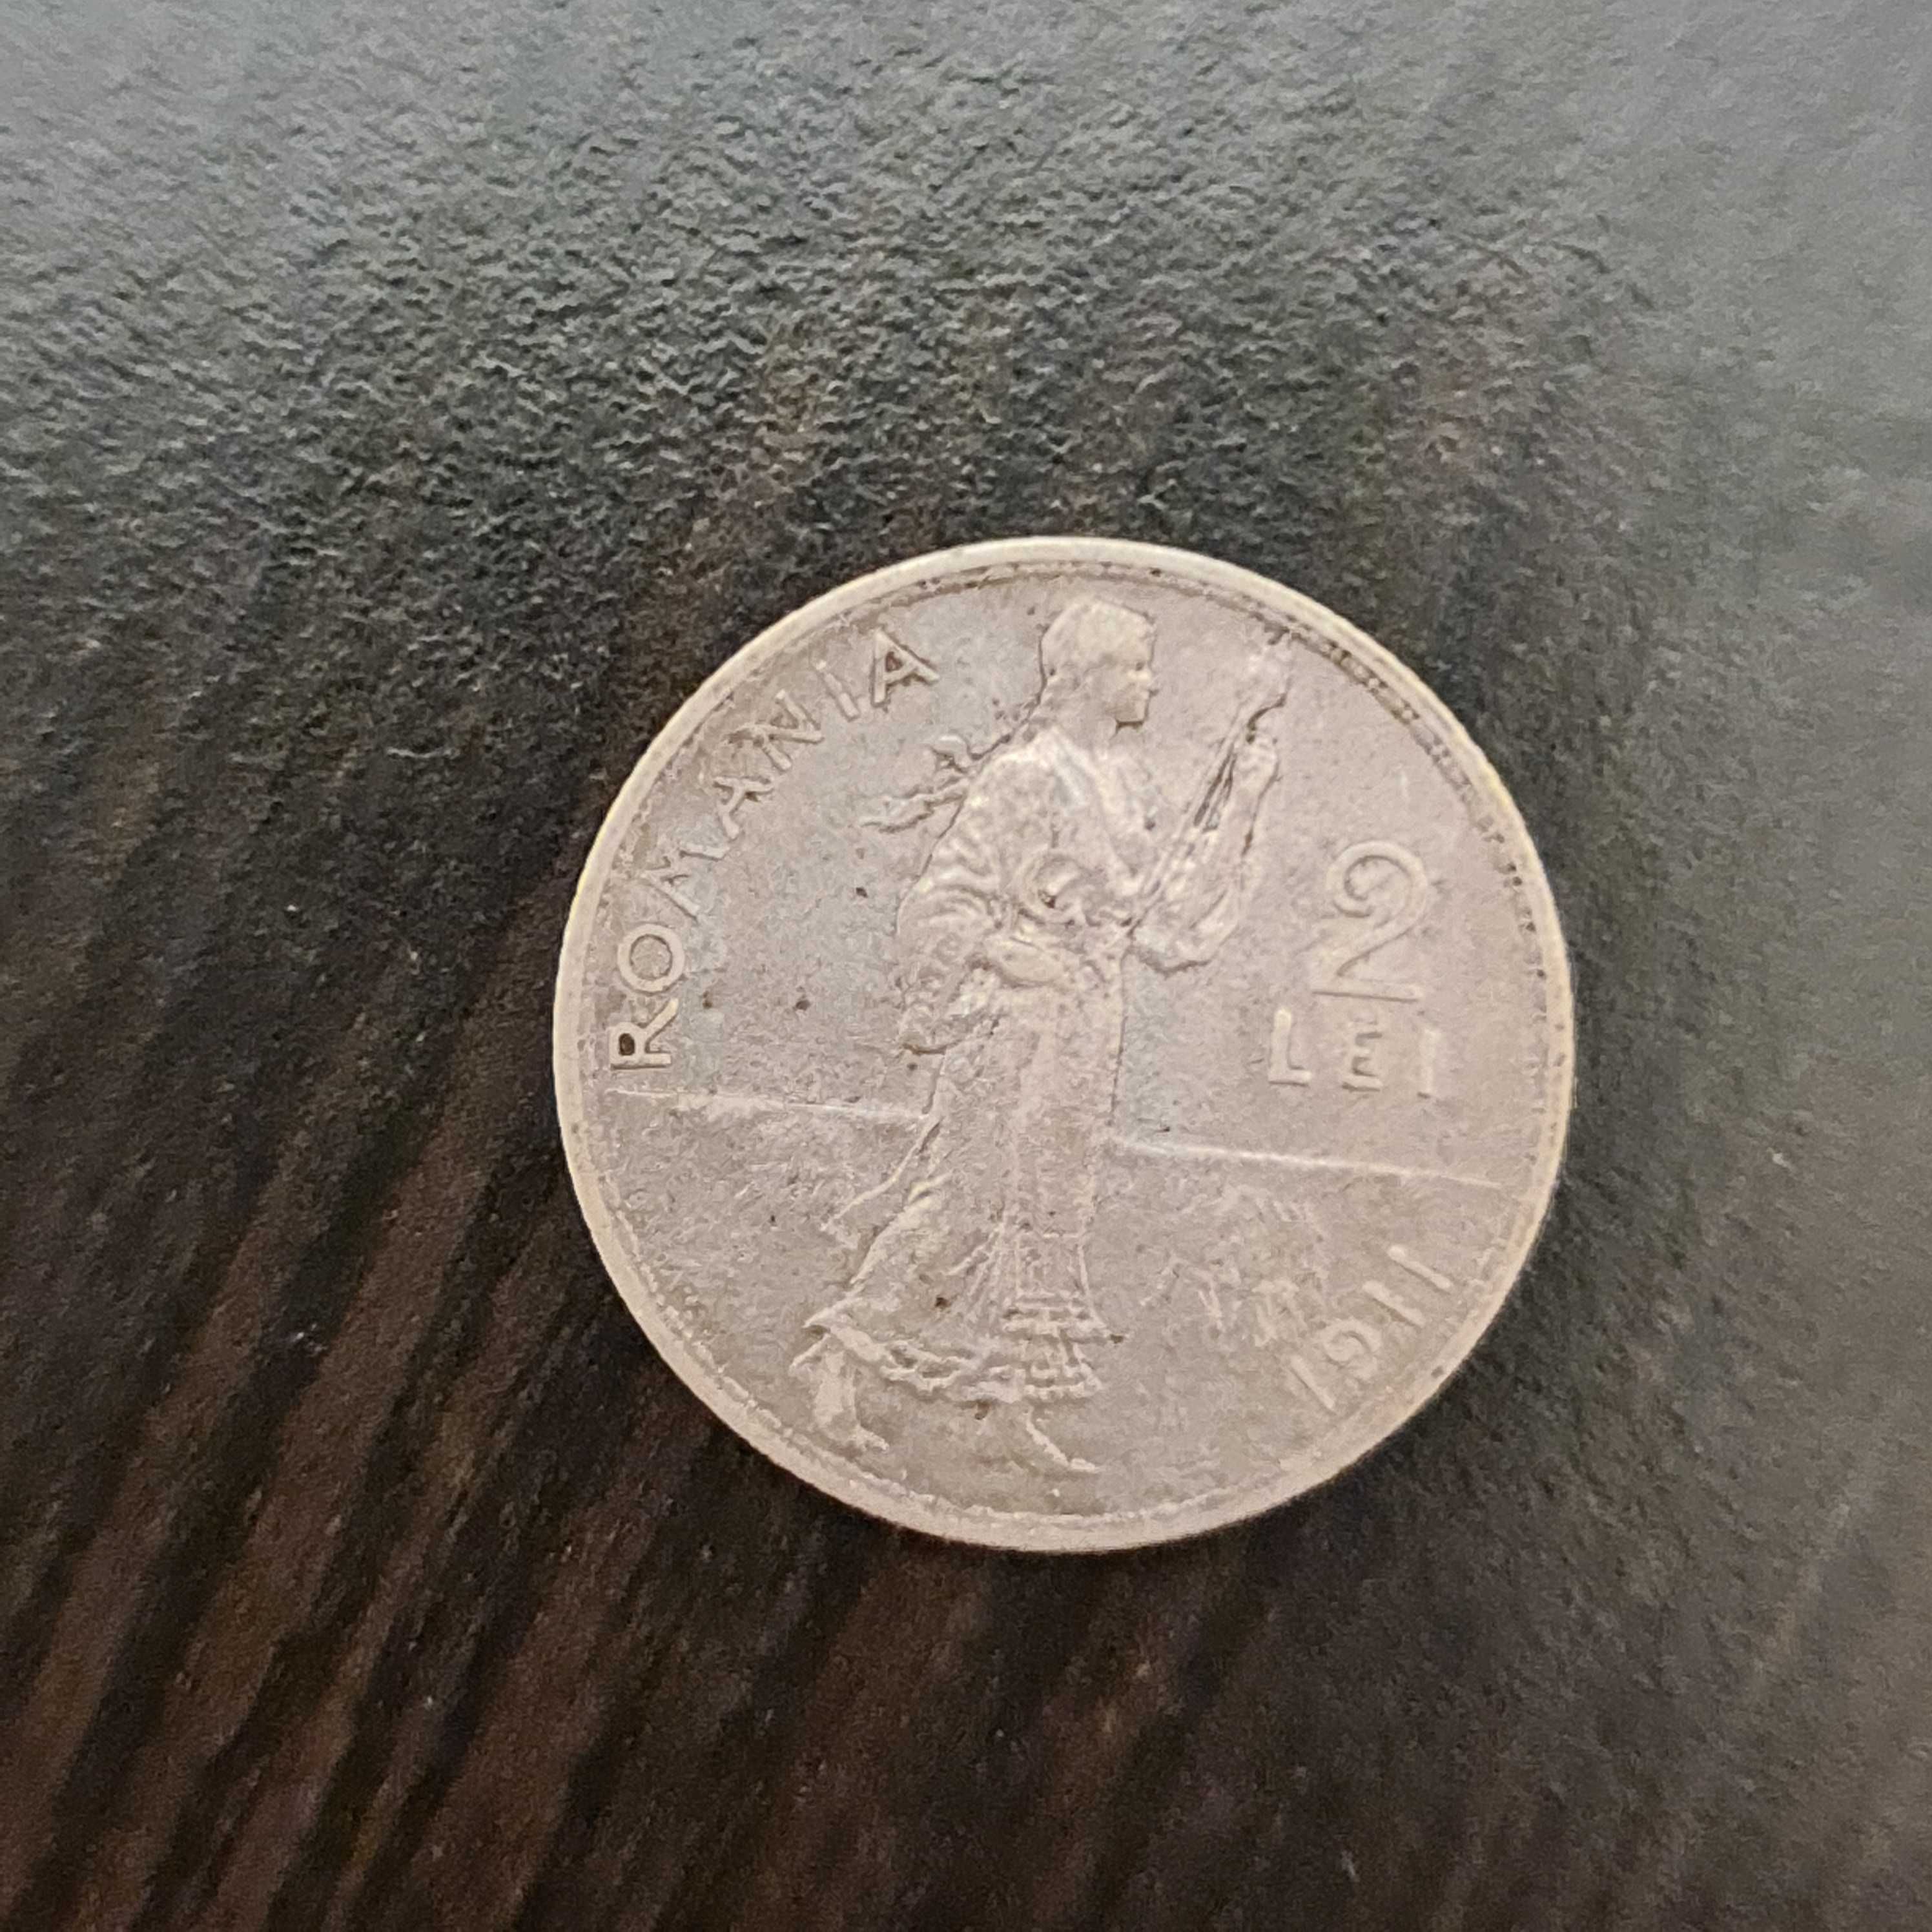 Monede vechi rare originale 2